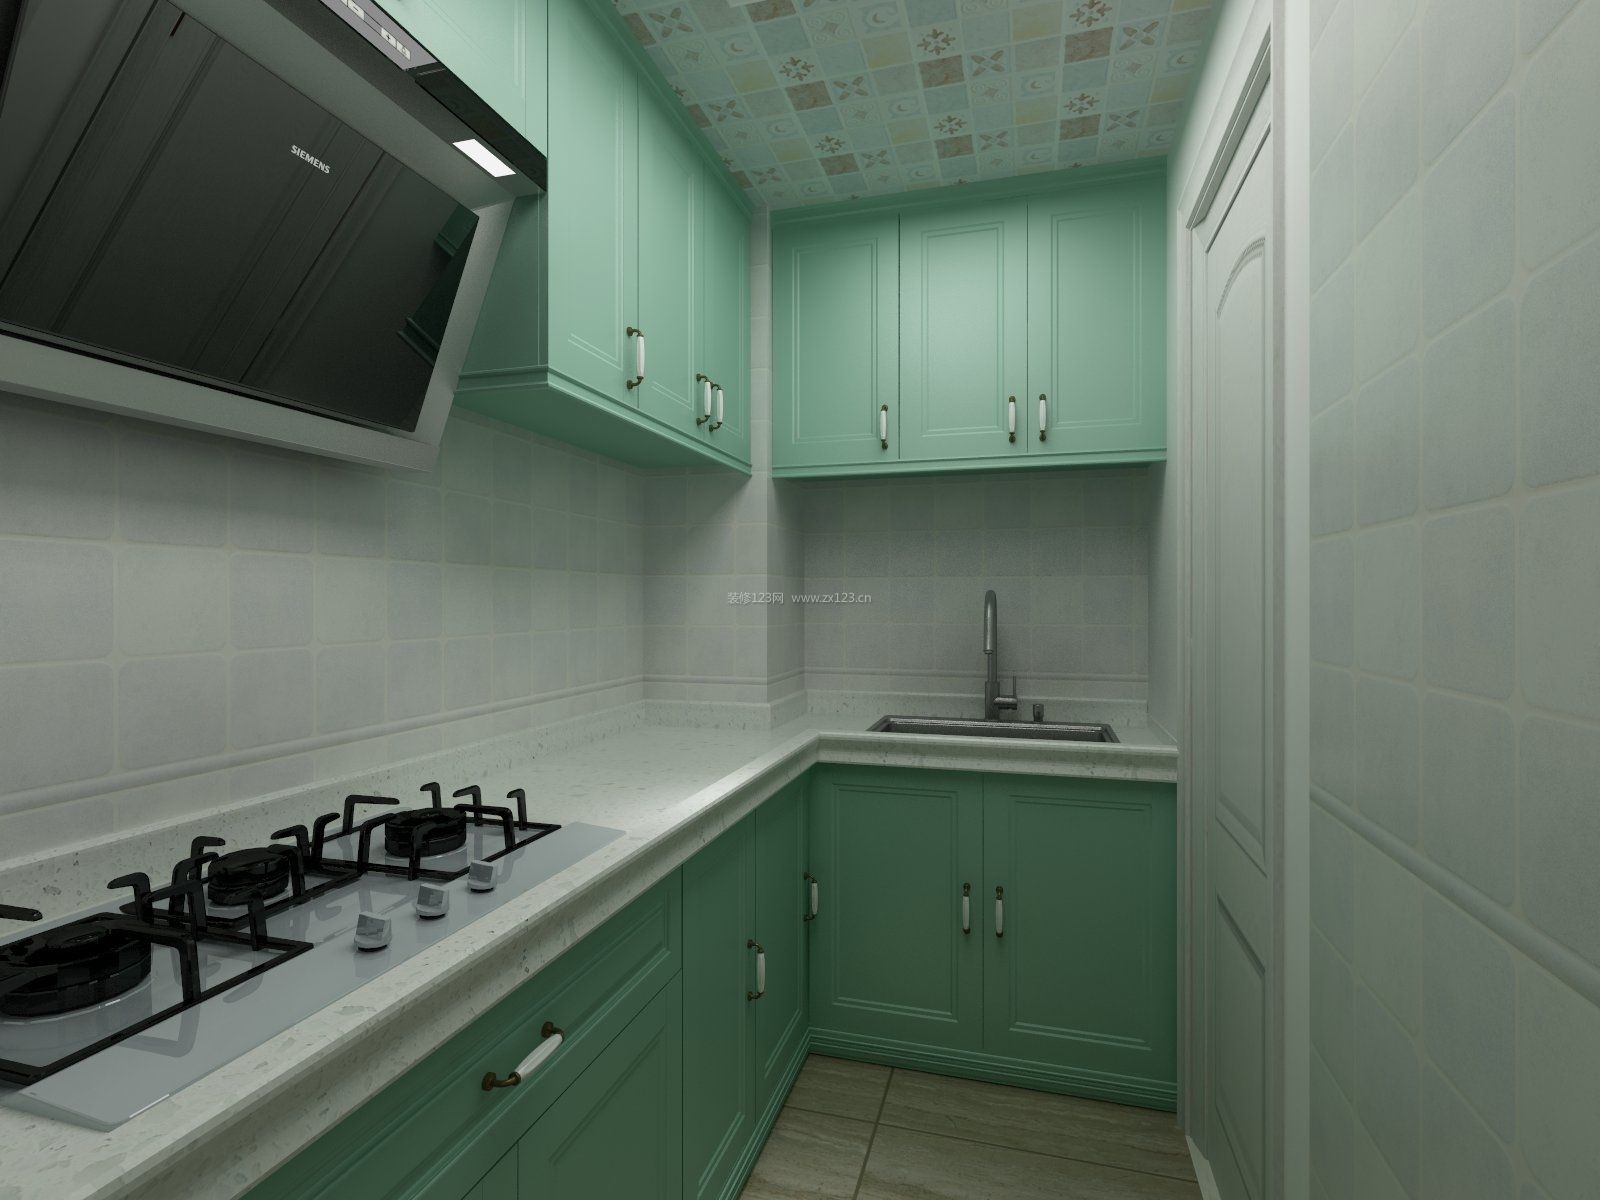 小户型厨房装修效果图大全2020图片 厨房整体橱柜颜色